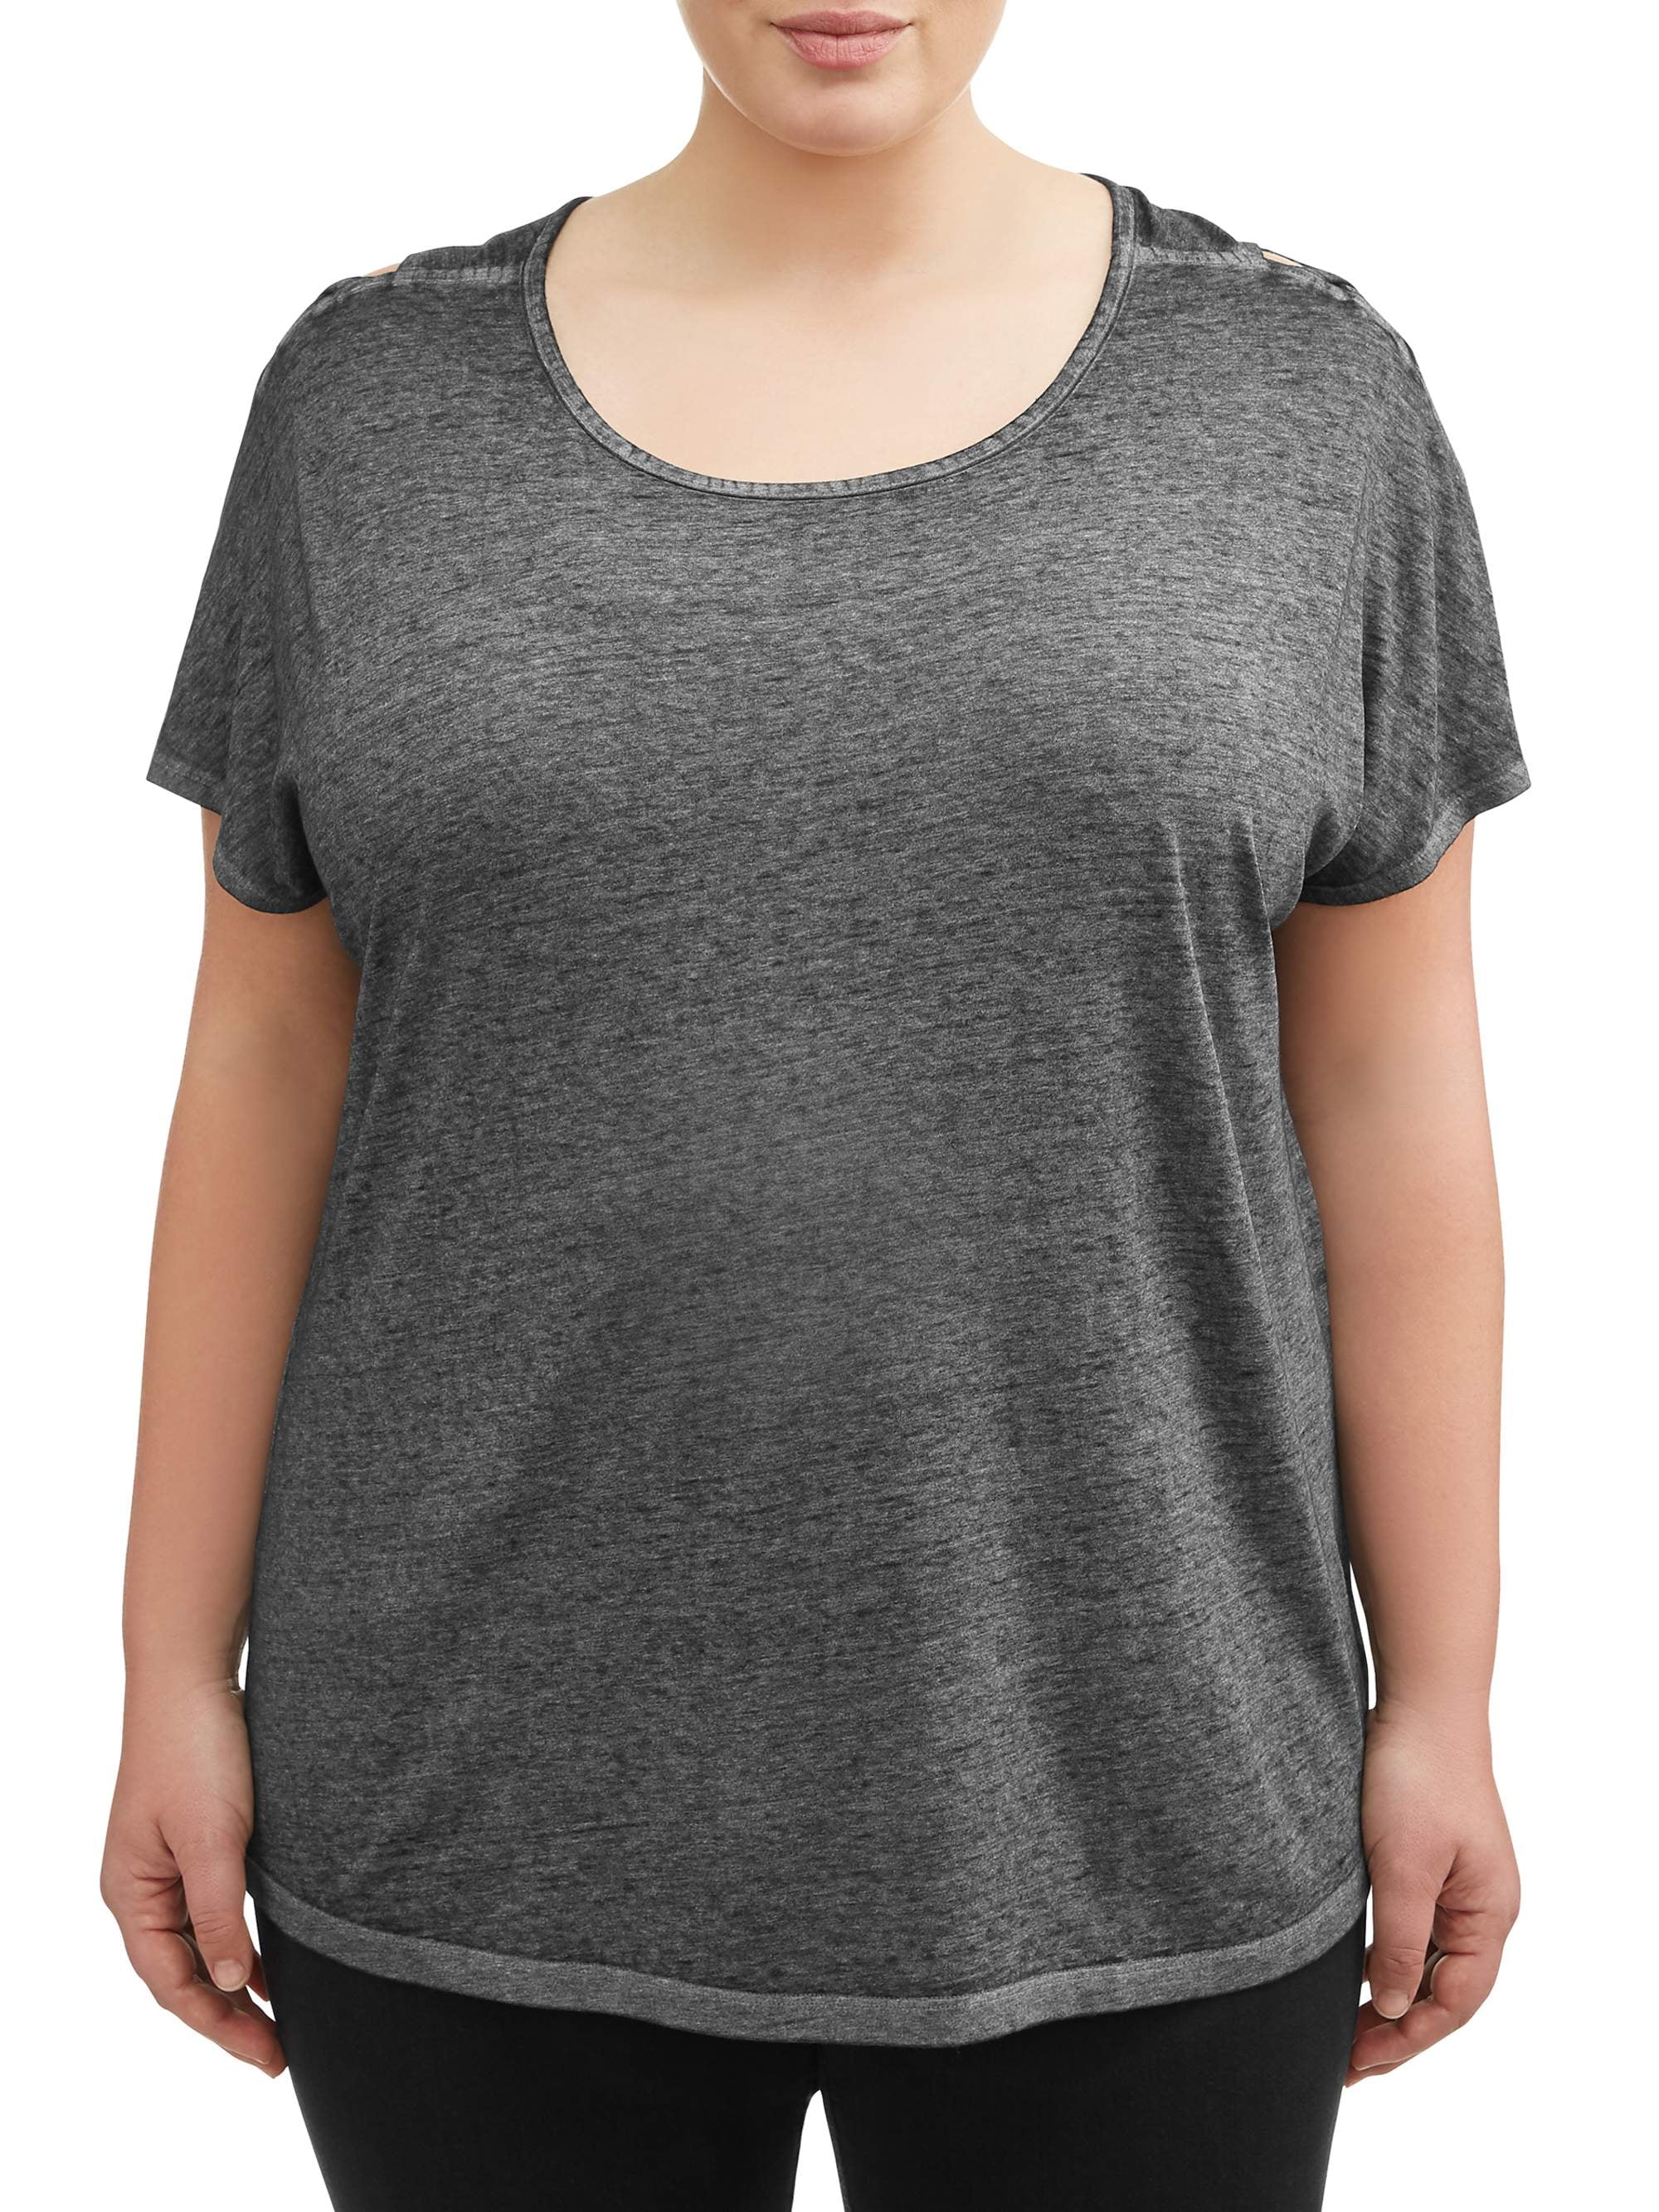 Terra & Sky Women's Plus Size Tee with Shoulder Detailing - Walmart.com